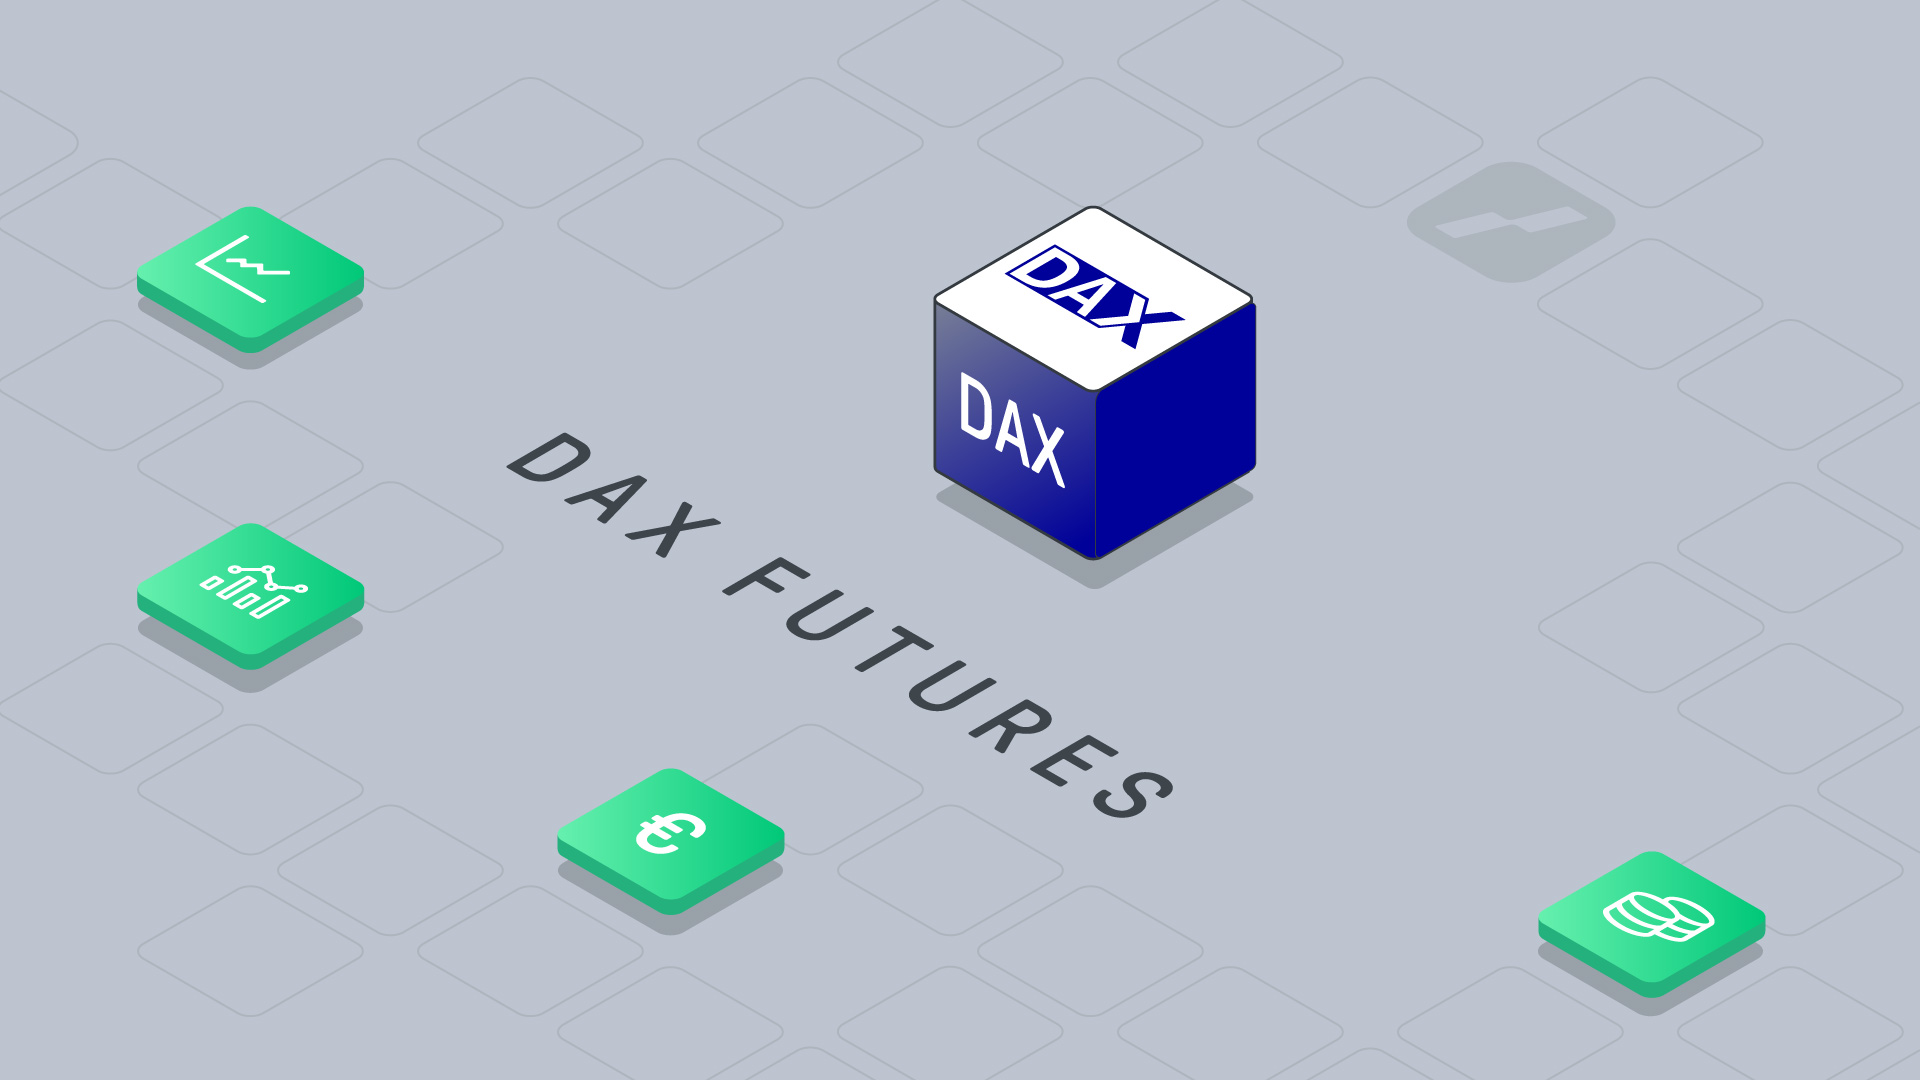 Dax futures